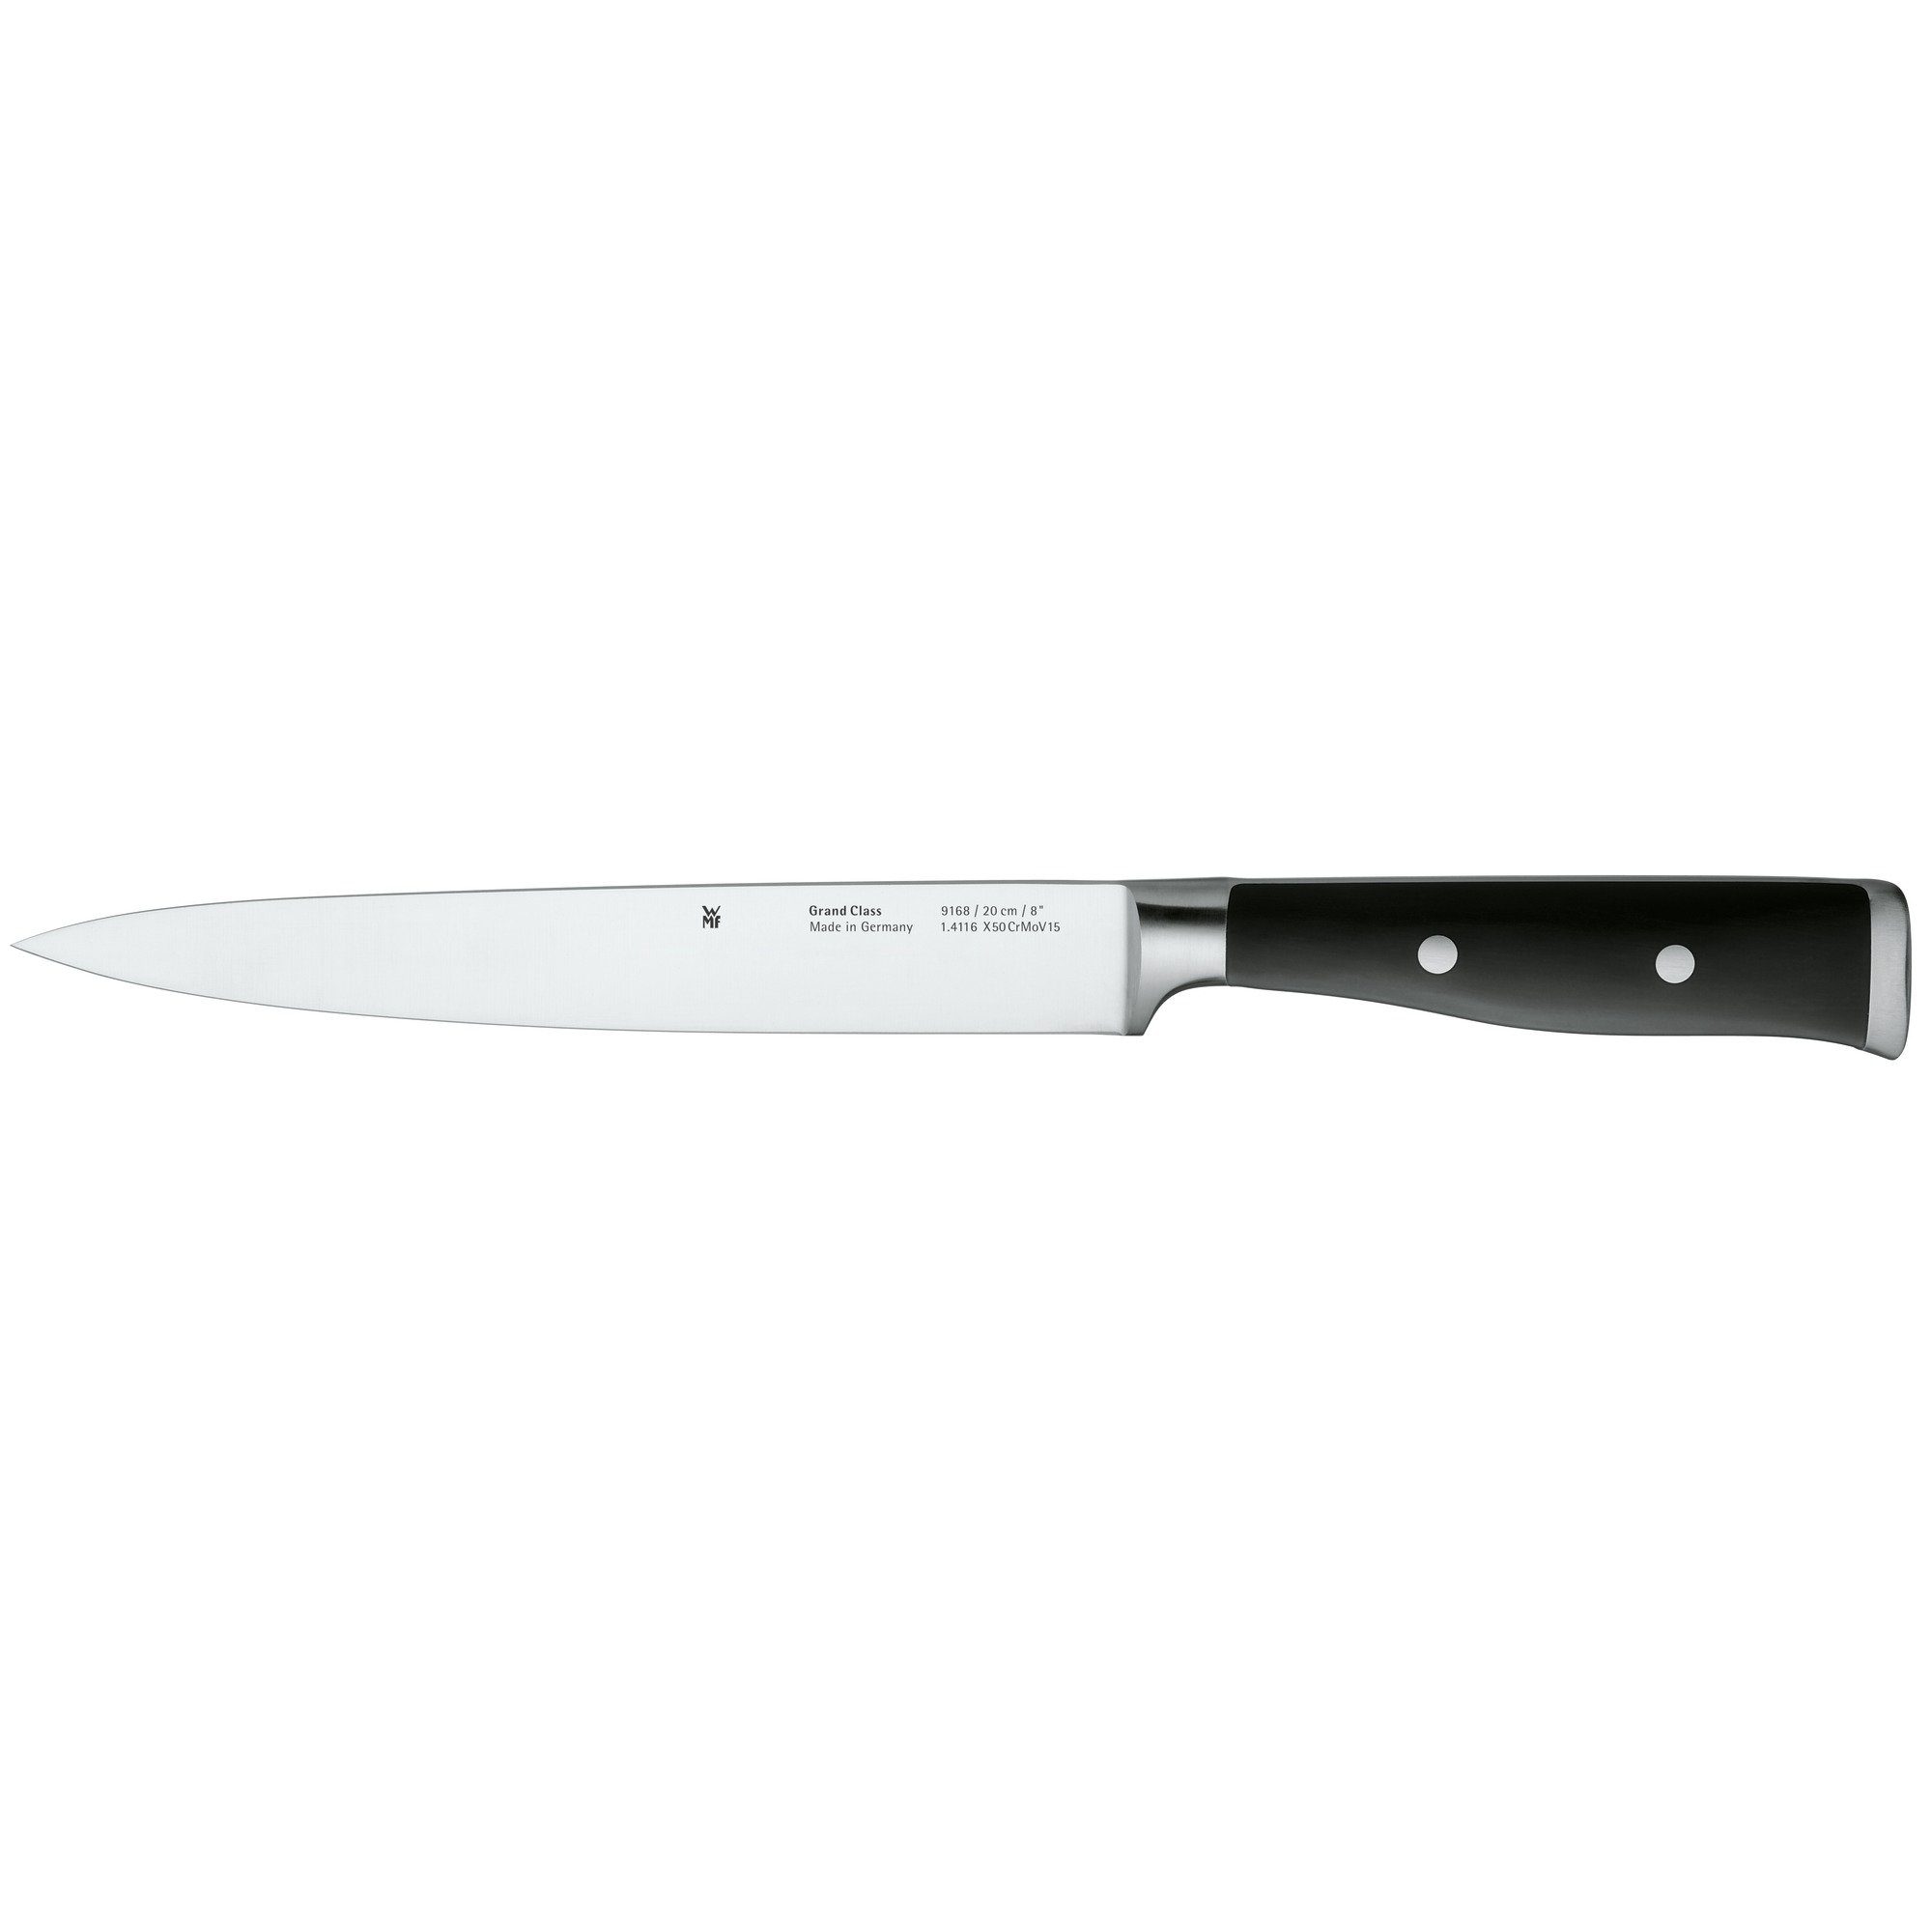 WMF Fleischmesser Klinge 20 Class, cm Grand Cut, Messer Spezialklingenstahl, Performance geschmiedet